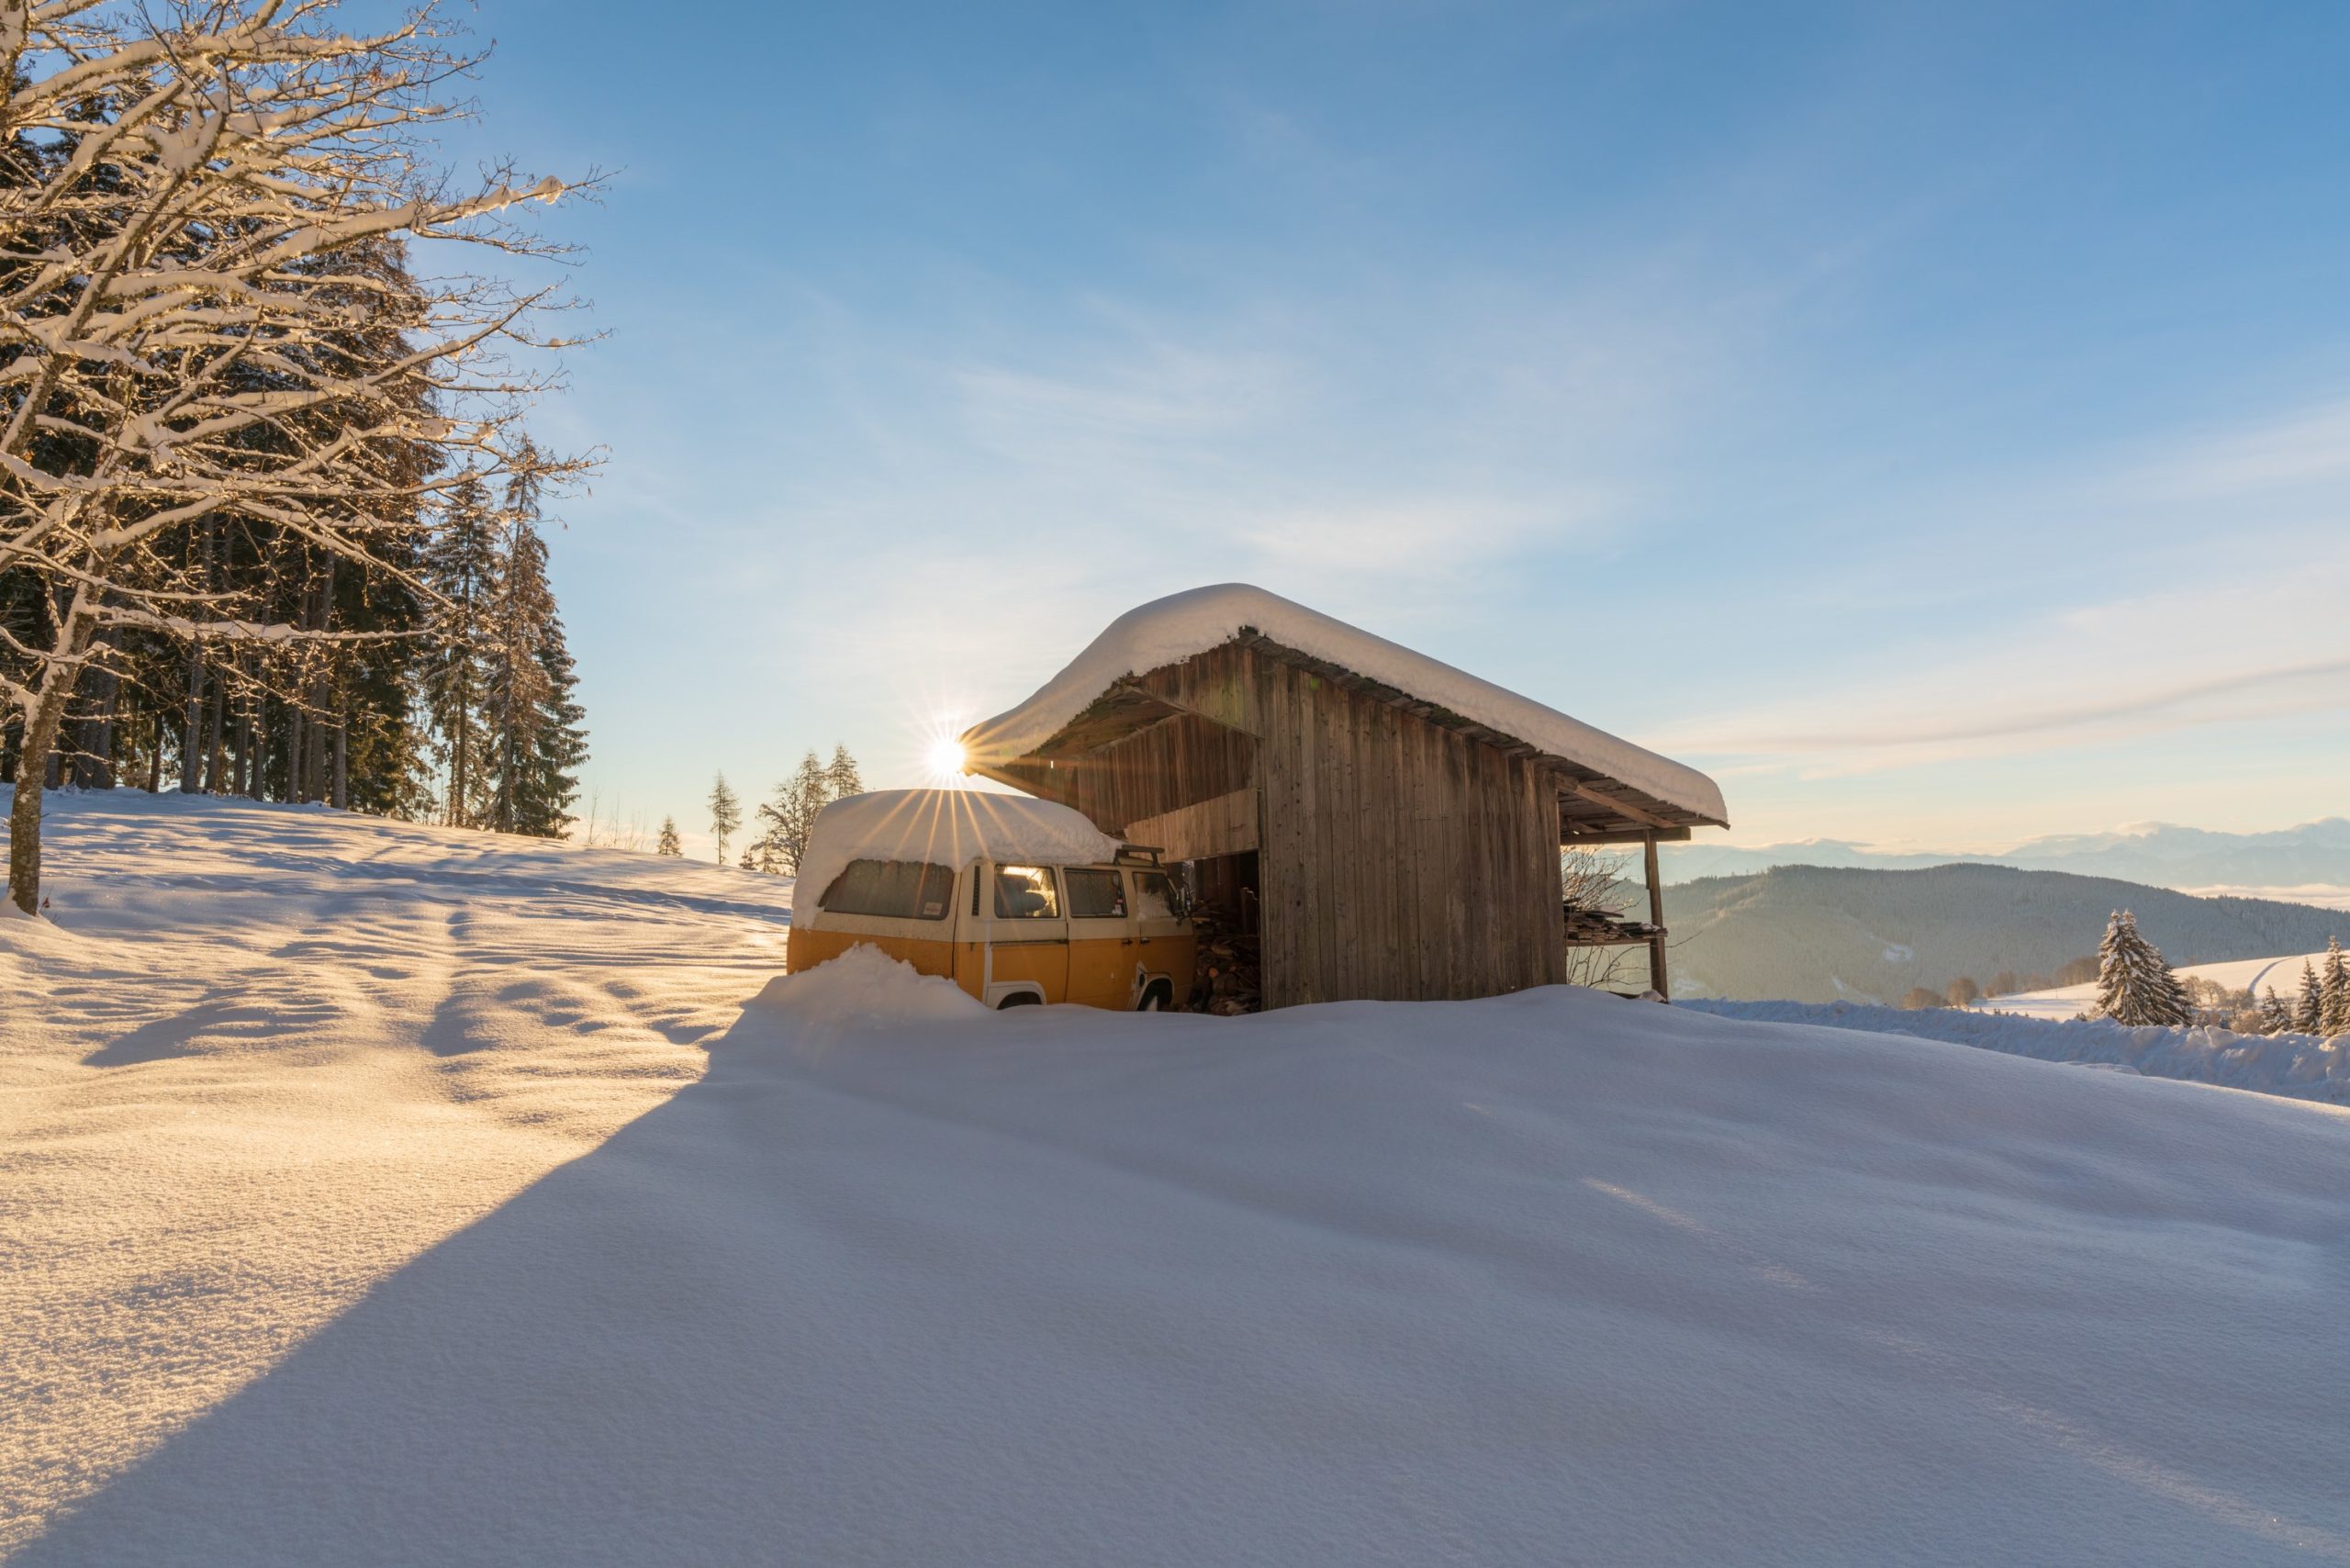 Sunrise over a classic VW camper covered in snow, Carinthia, Austria